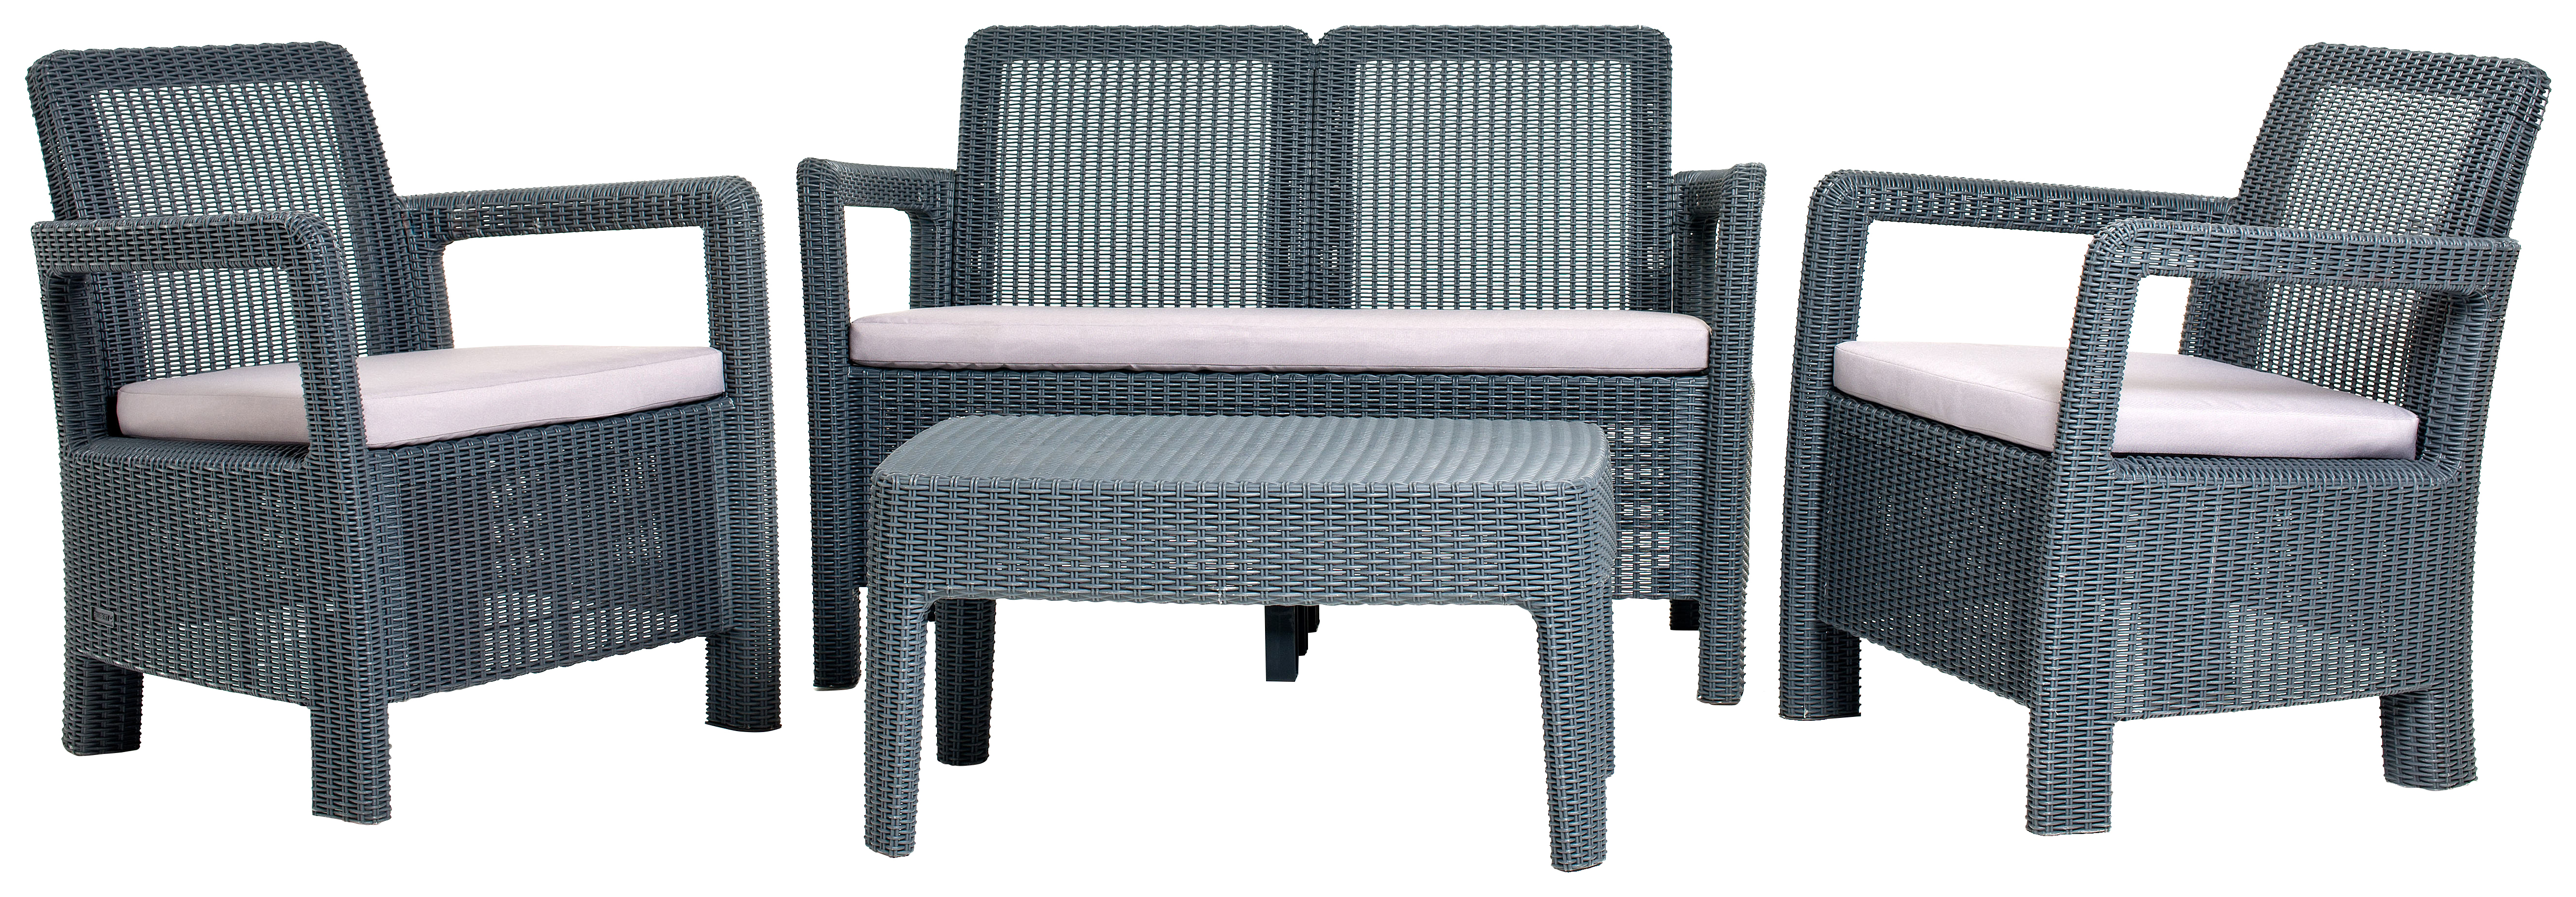 Image of Keter Tarifa 4 Seater Outdoor Garden Lounge Set